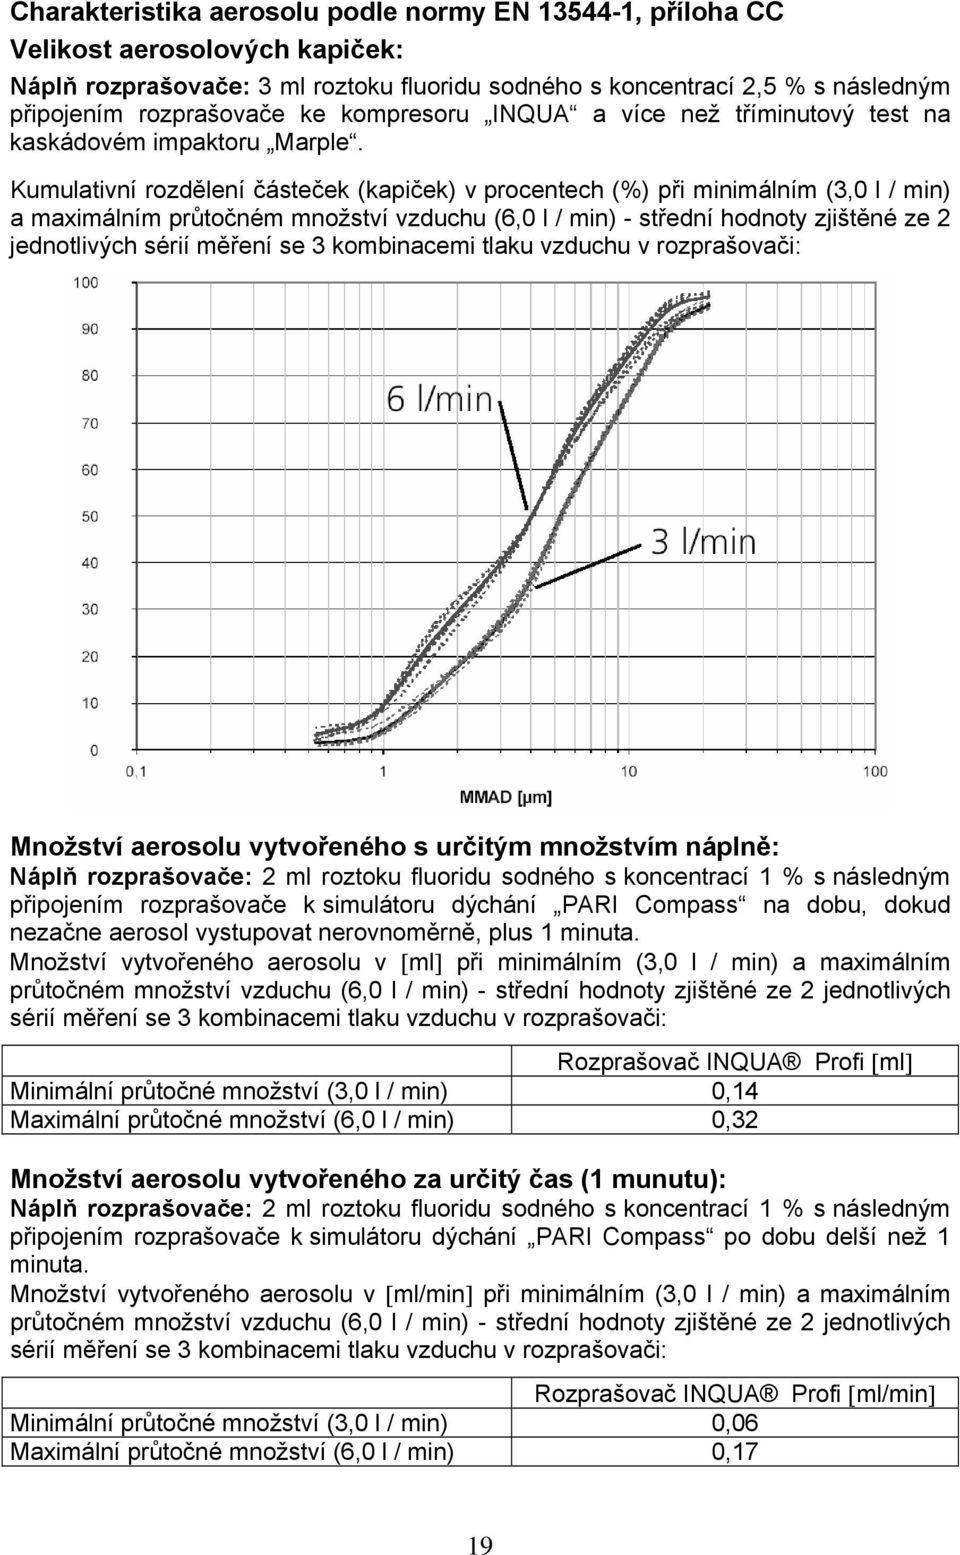 Kumulativní rozdělení částeček (kapiček) v procentech (%) při minimálním (3,0 l / min) a maximálním průtočném množství vzduchu (6,0 l / min) - střední hodnoty zjištěné ze 2 jednotlivých sérií měření